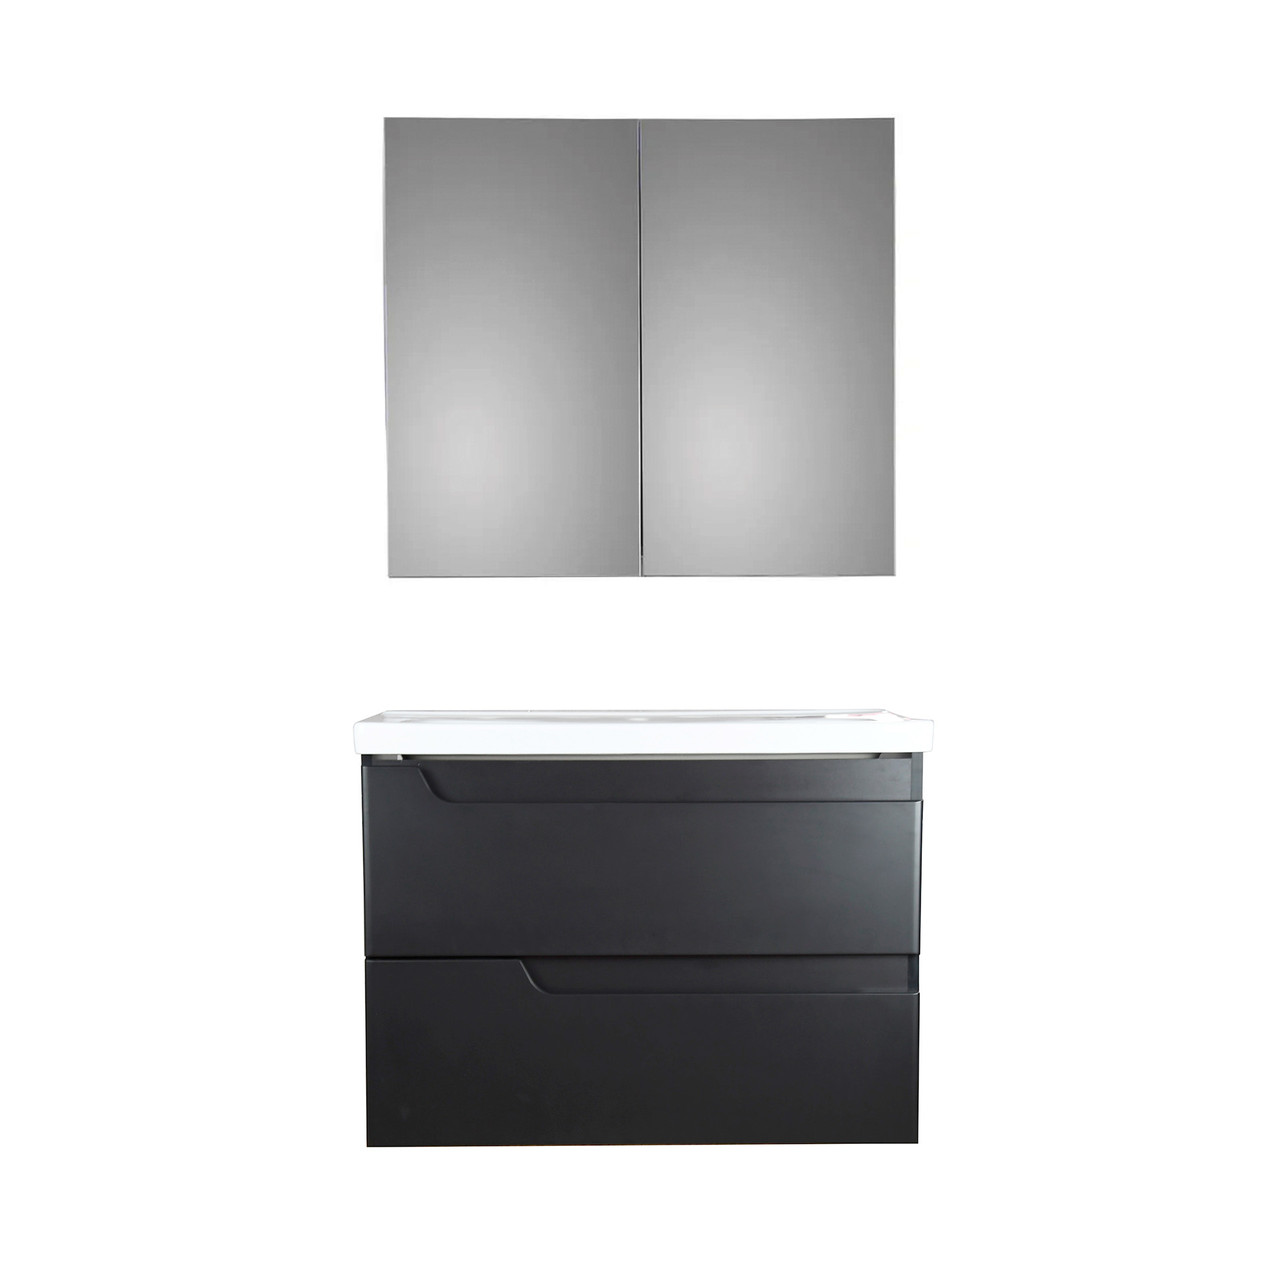 Комлект мебели GLORIA Милано 80 подвесная тумба с зеркальным шкафом Черный матовый